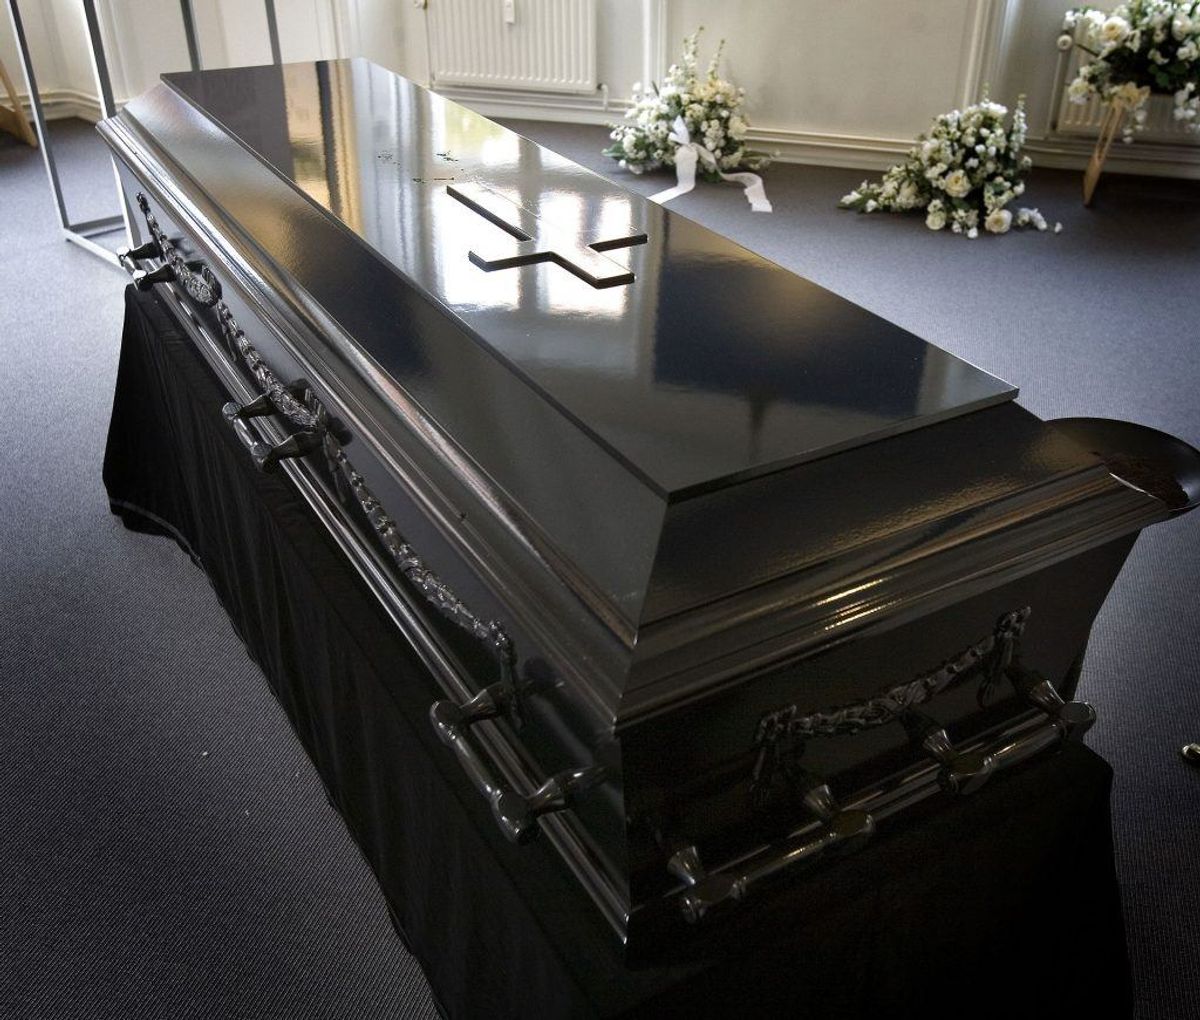 En begravelse kan være en bekostelig affære. Det kan lettes en anelse, hvis man søger om begravelseshjælp. (Foto: Scanpix)